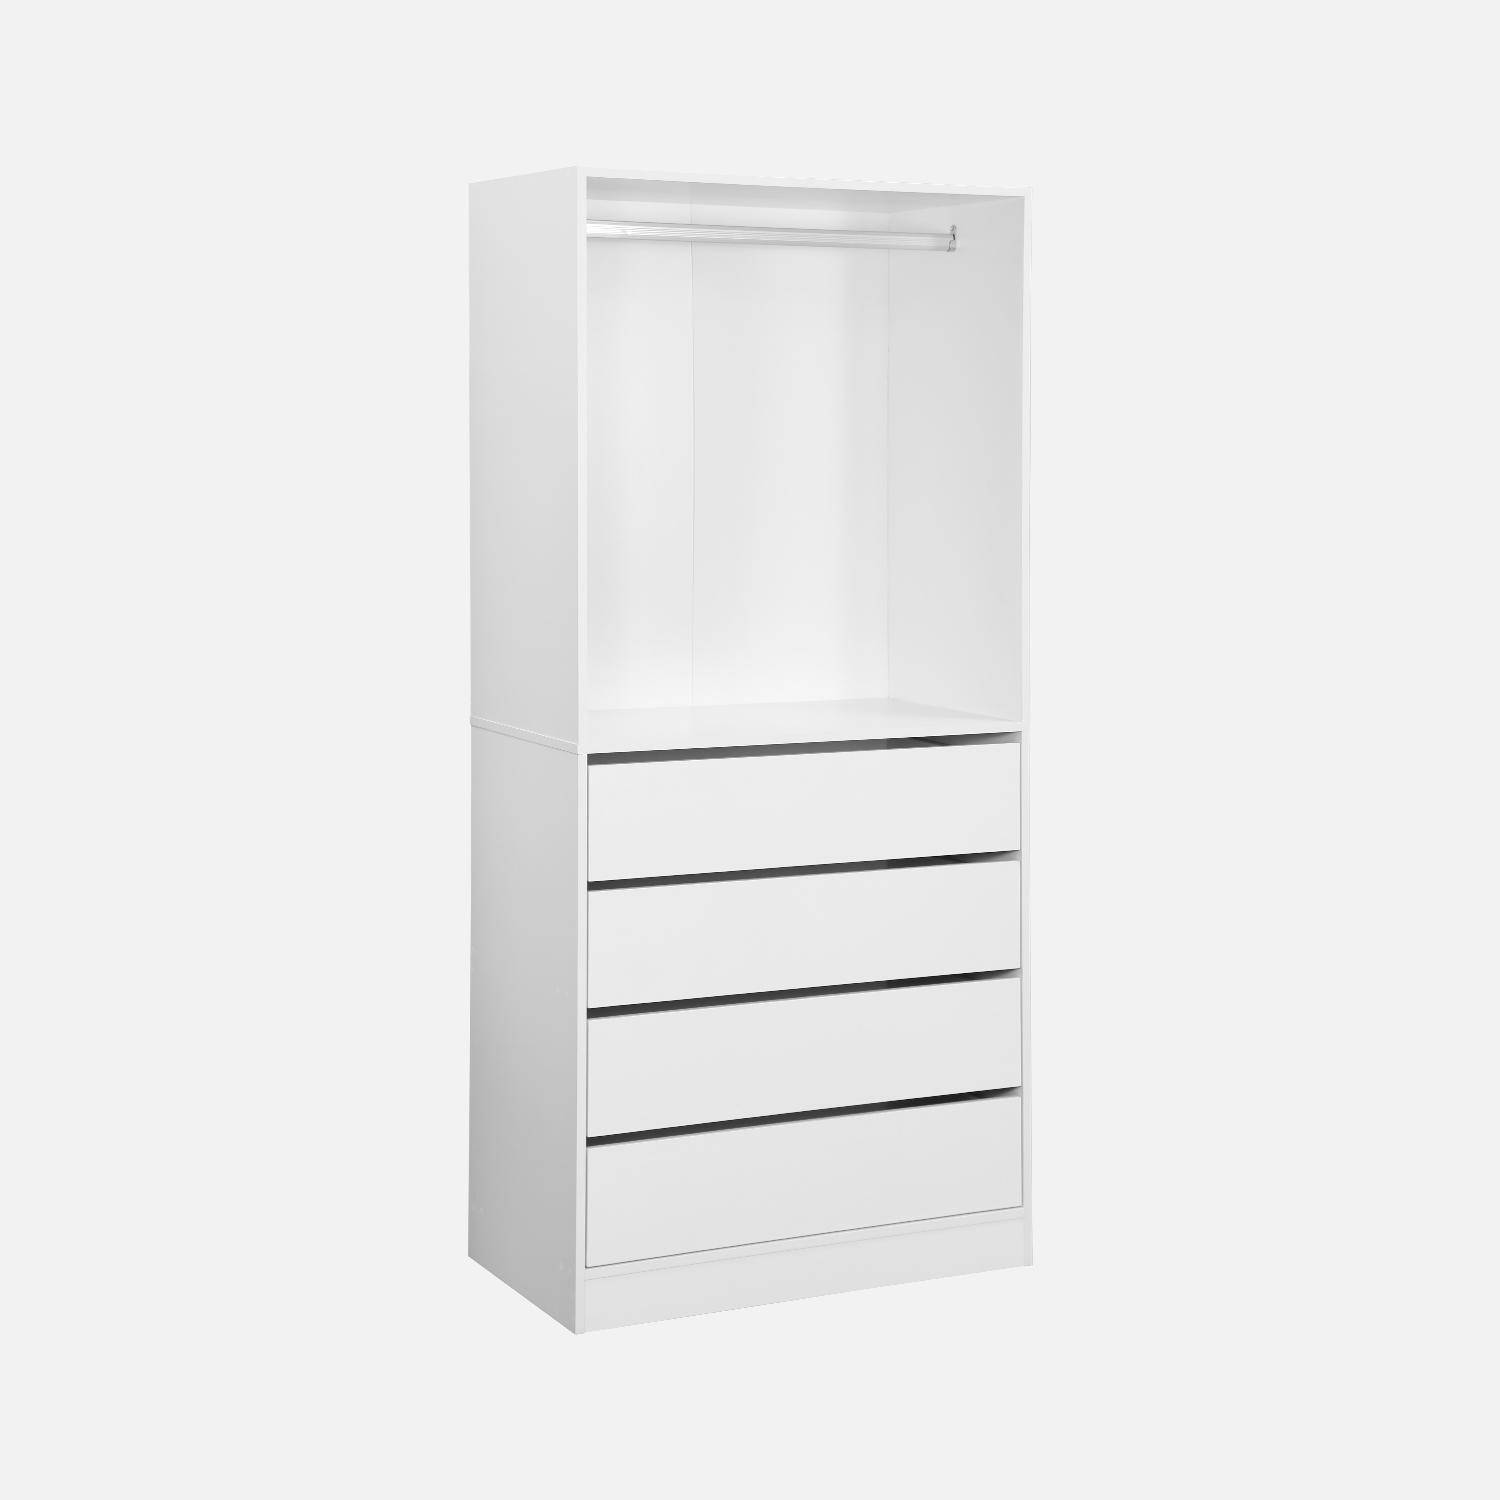 Modulo armadio con 4 cassetti e 1 armadio, bianco, pannelli laminati Photo4